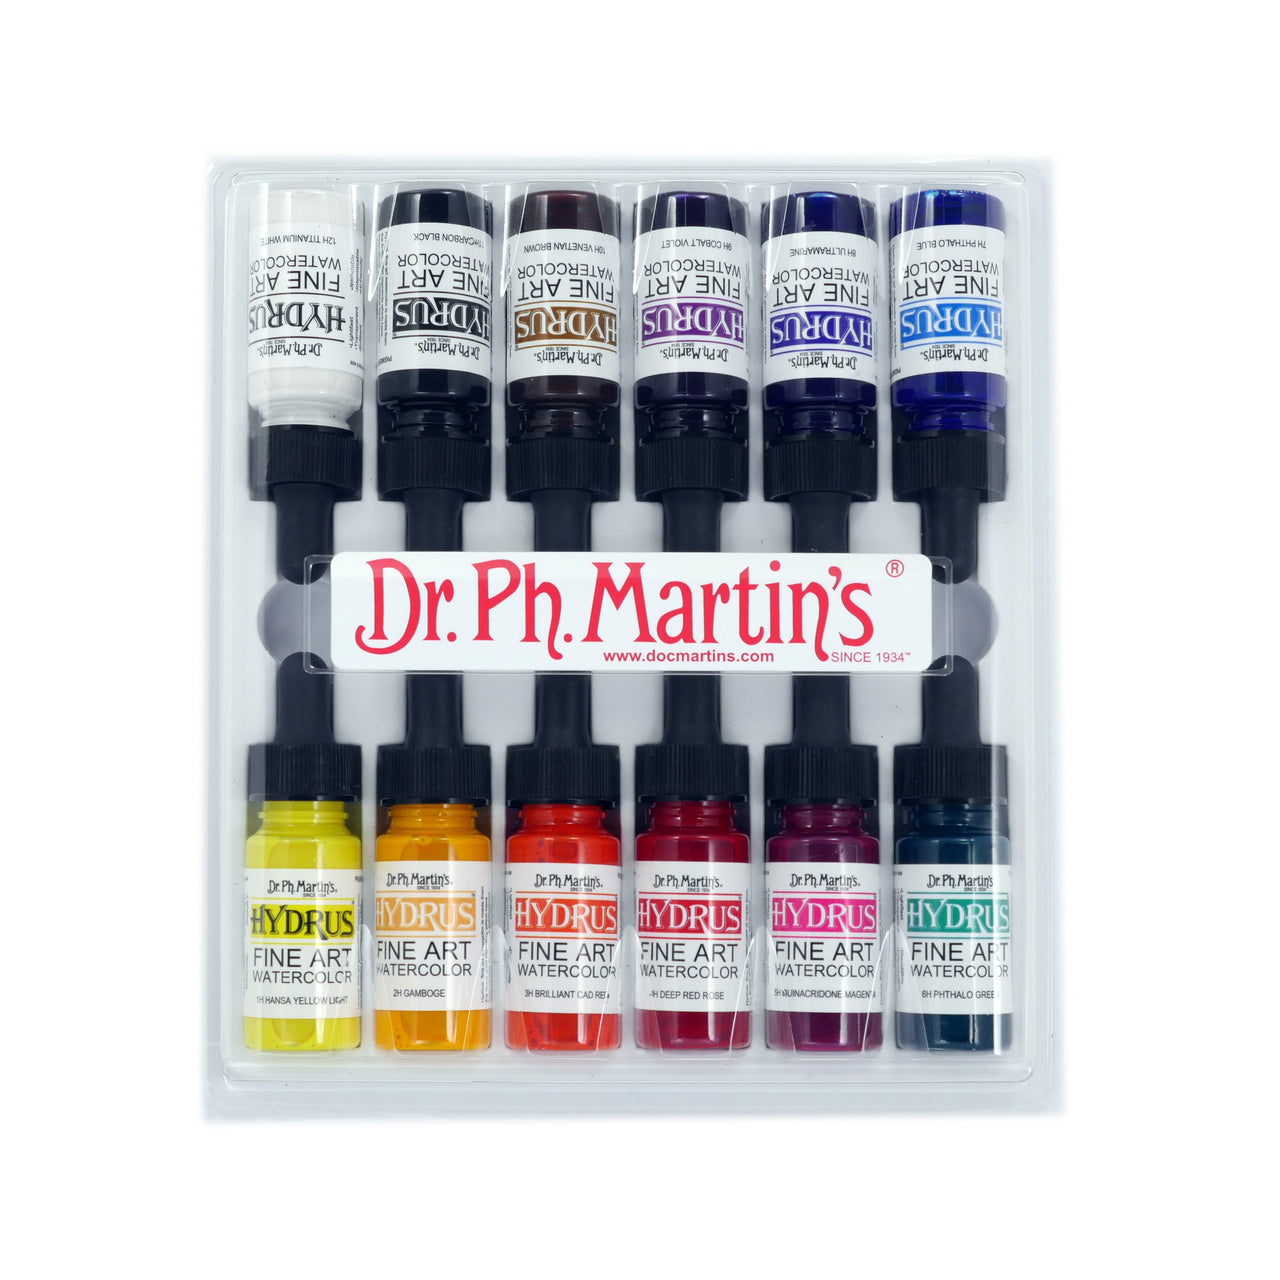 Dr. Ph. Martin's Hydrus Fine Art Watercolor (Set 3) Watercolor Set, 1.0 oz,  Set 3 Colors, 1 Set of 12 Bottles